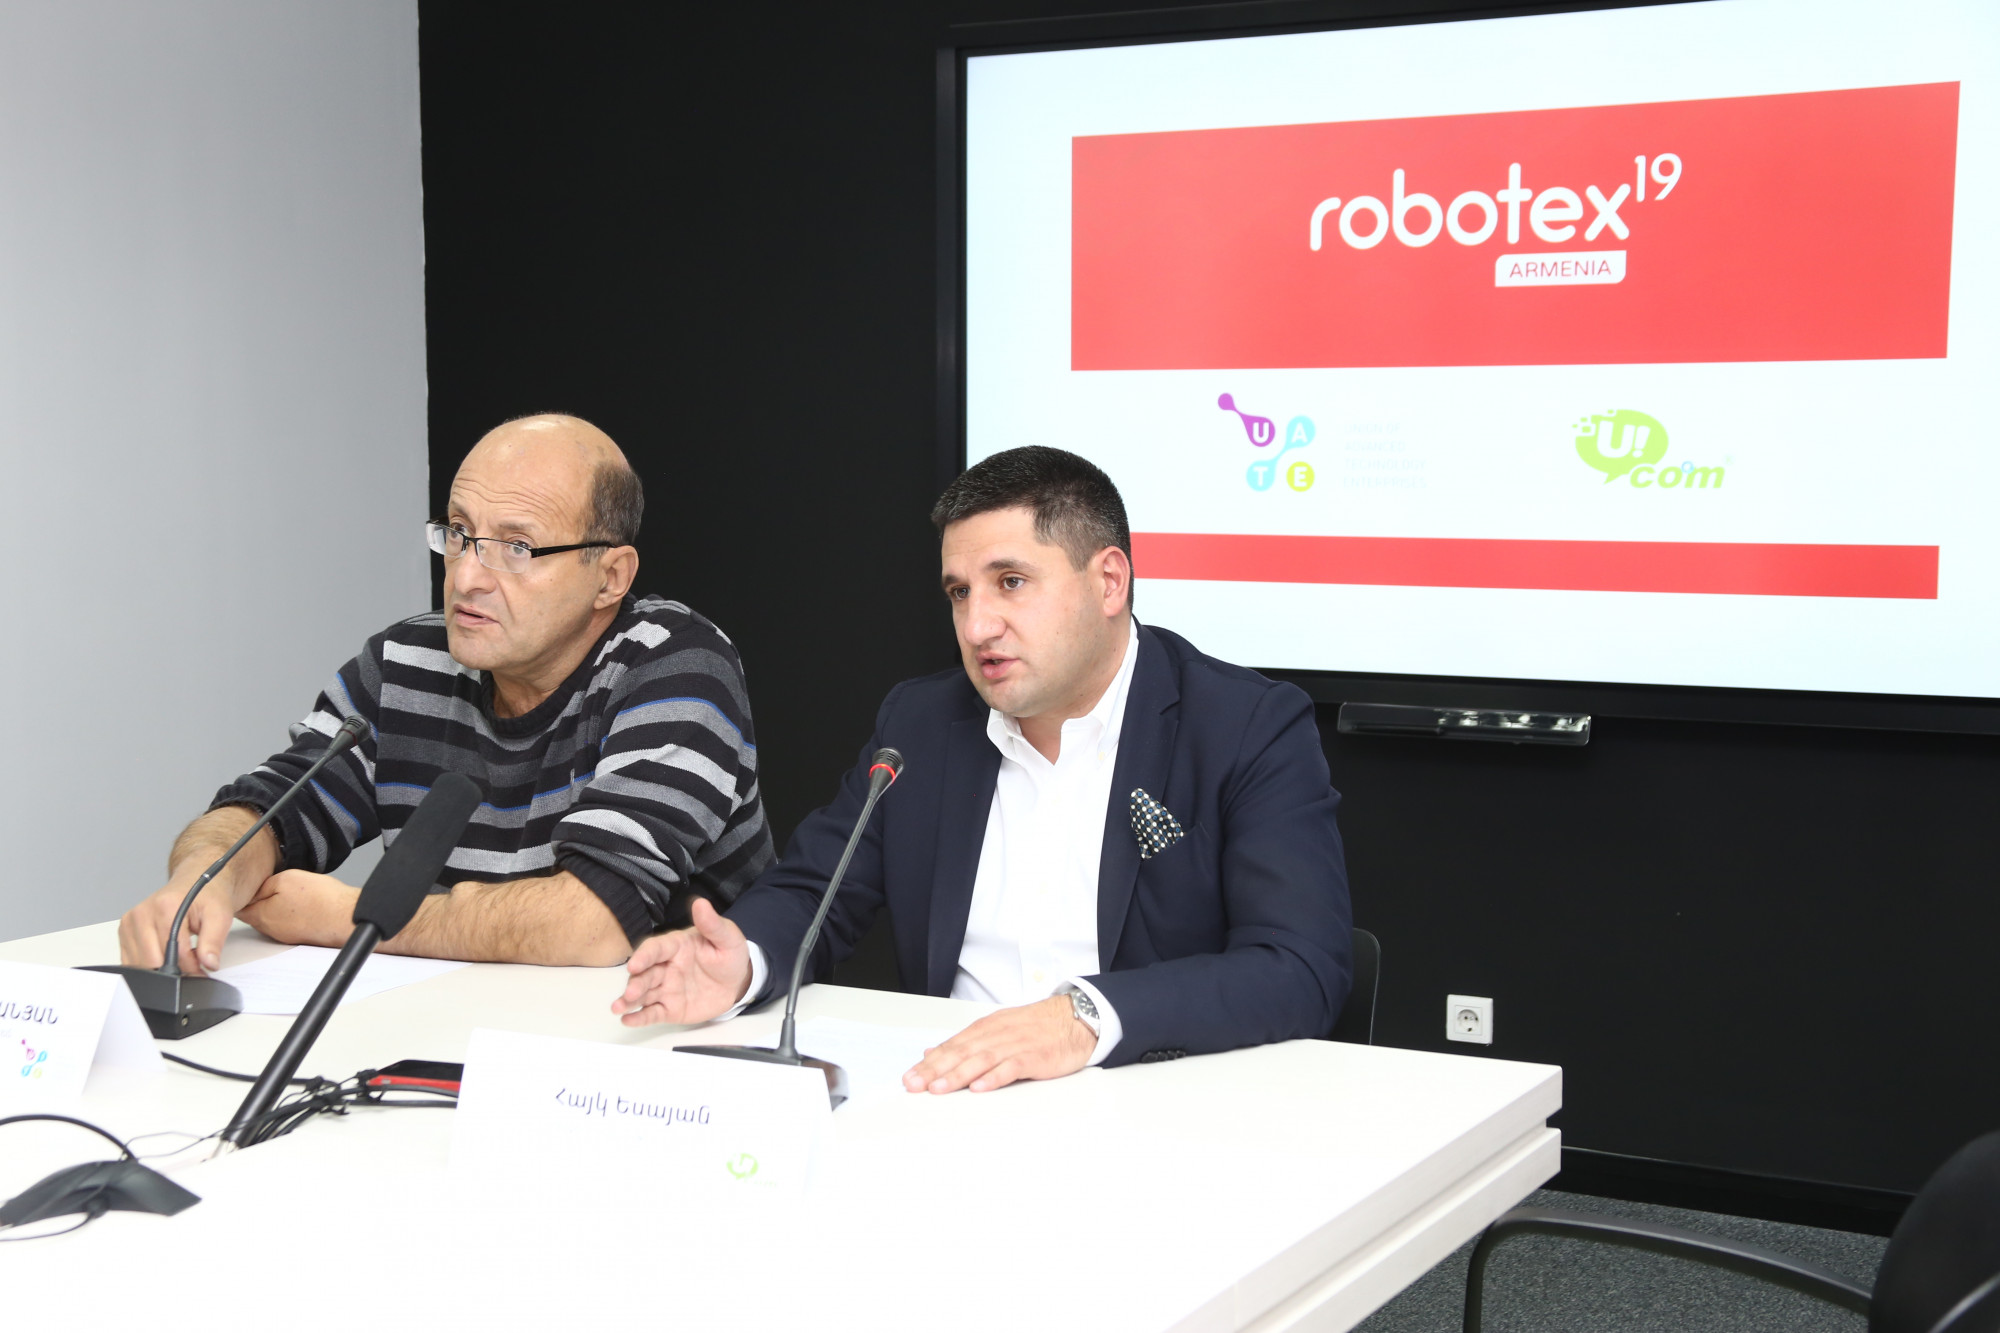    Robotex Armenia,    Ucom,   41 